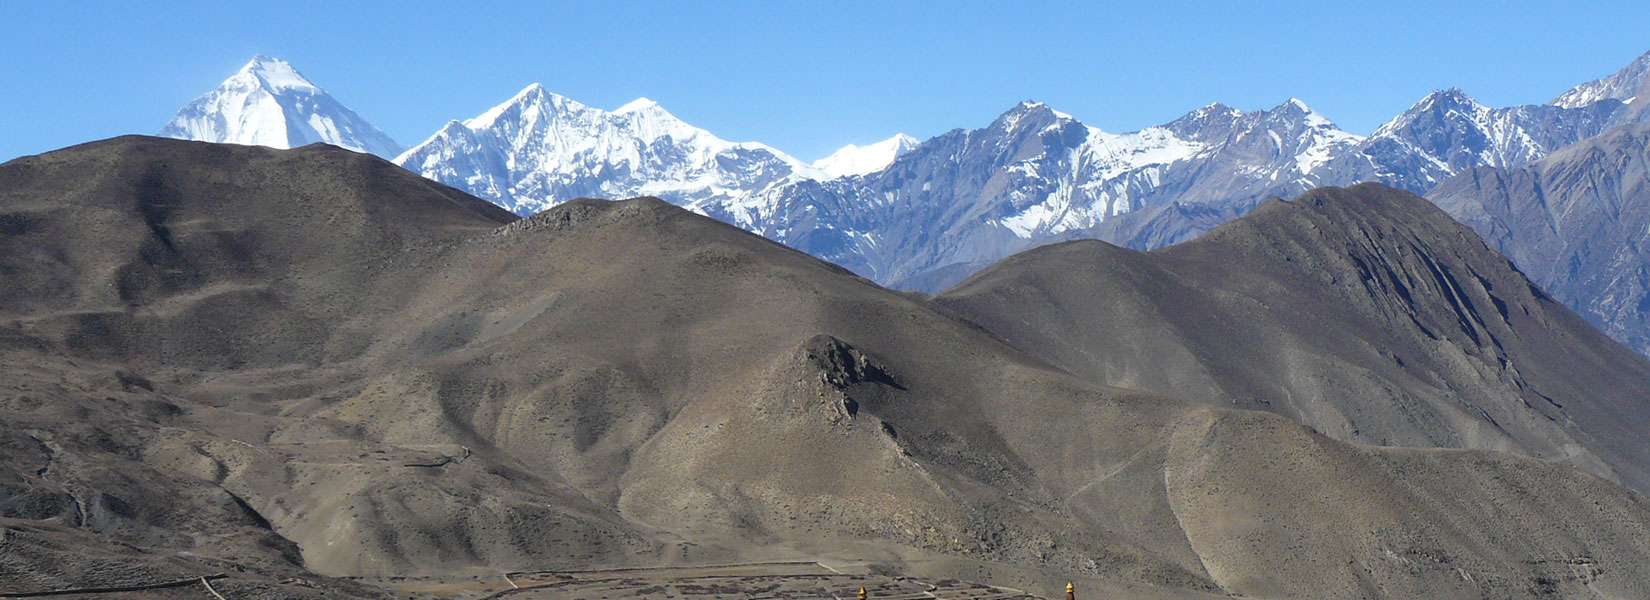 Dhaulagiri Region Trekking